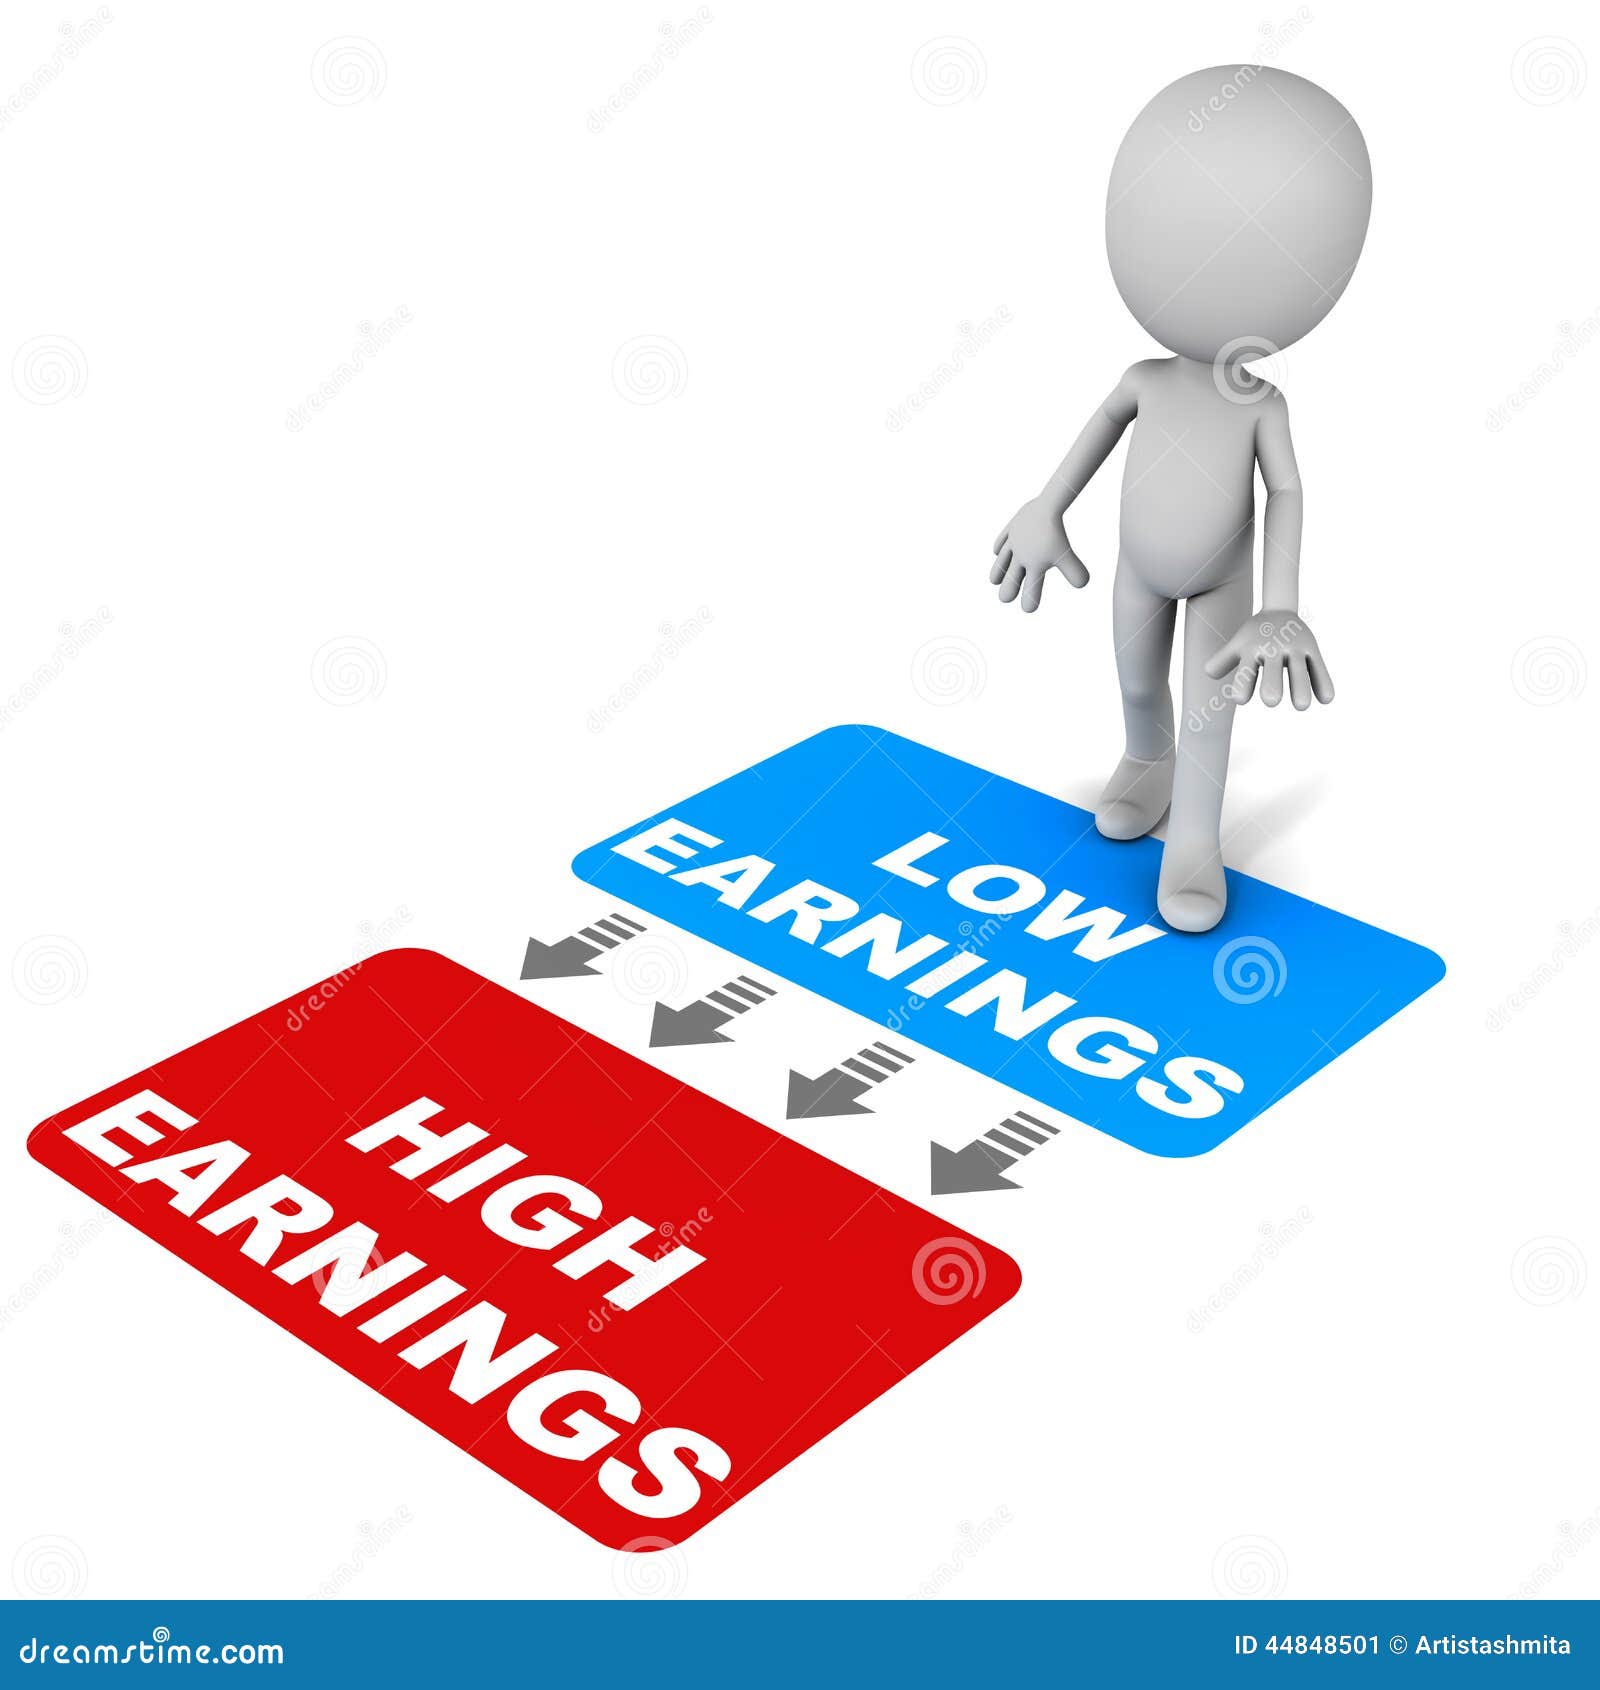 increase earnings